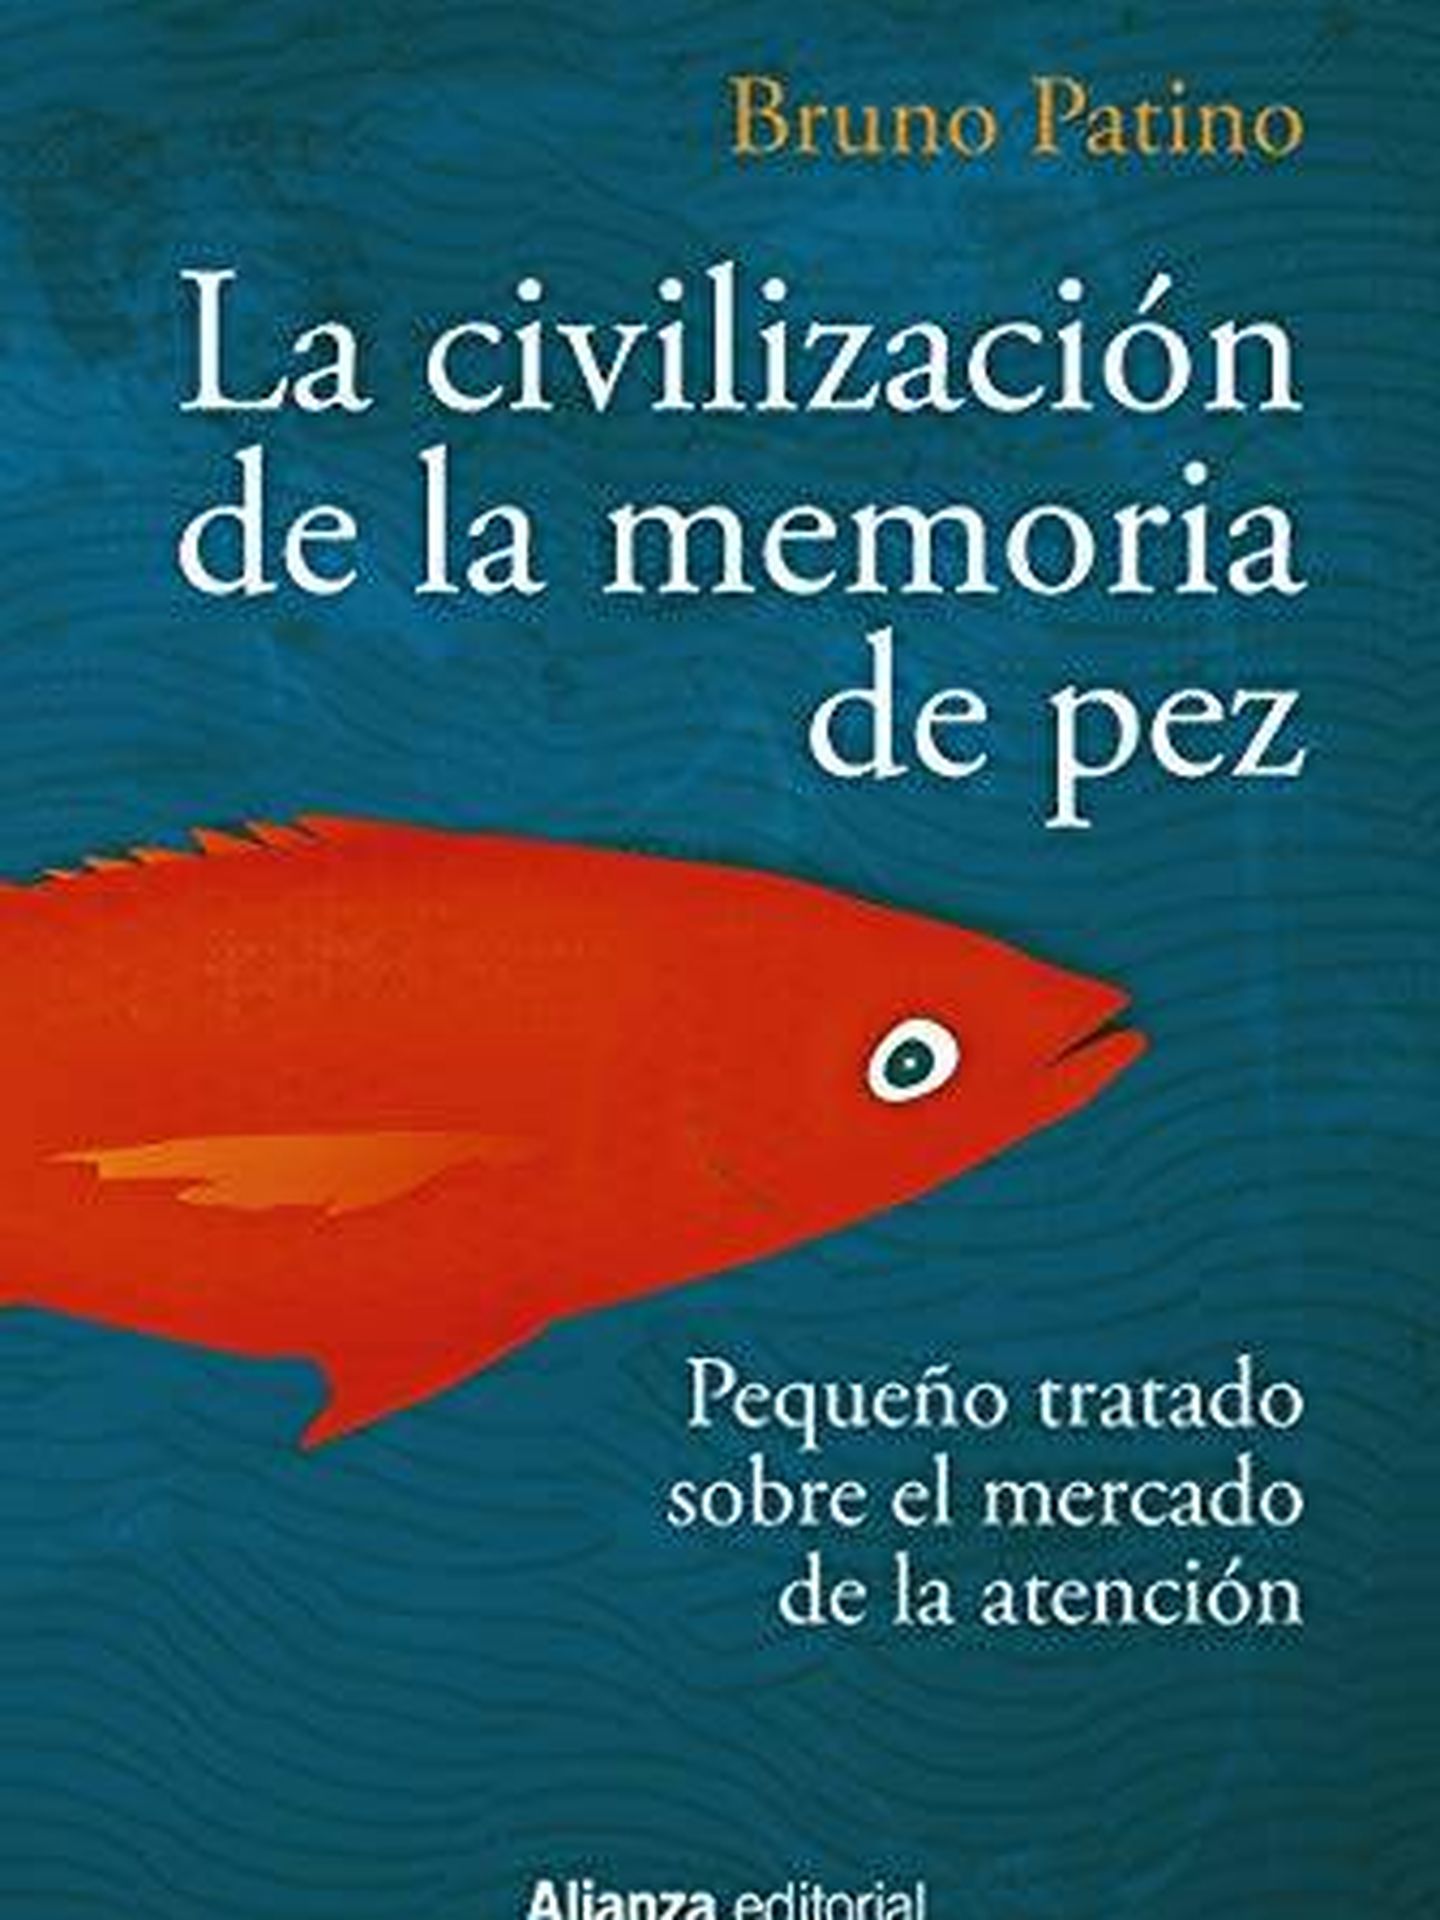 'La civilización de la memoria de pez: Pequeño tratado sobre el mercado de la atención'